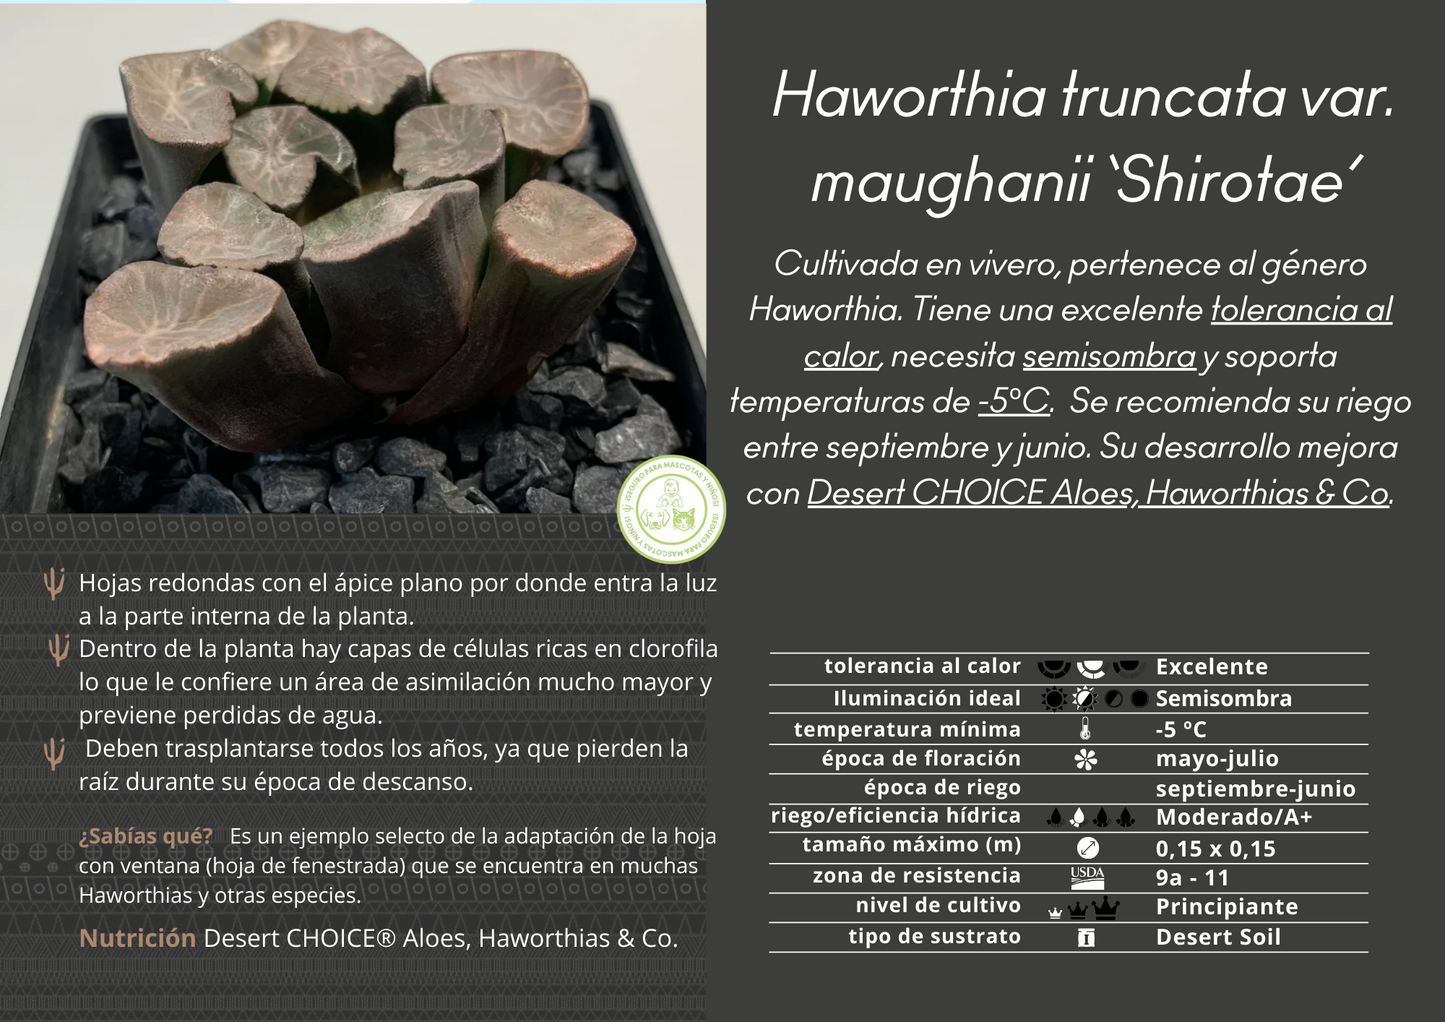 Haworthia truncata var. maughanii 'Shirotae'